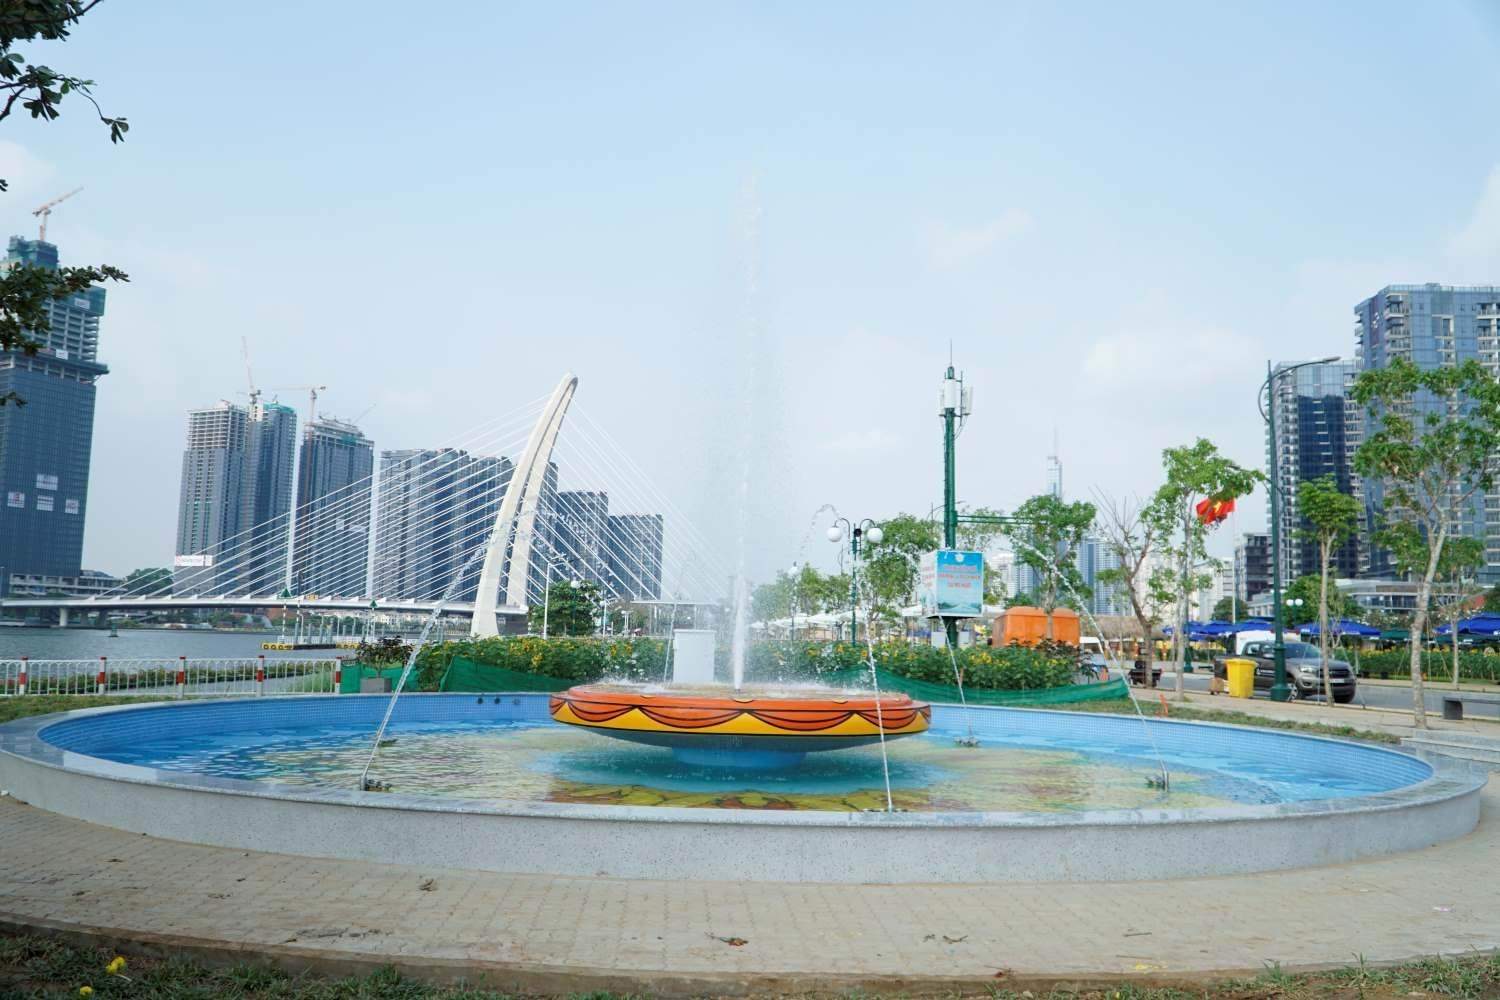 Nằm sát bờ sông Sài Gòn, khu vực giữa công viên, một hạng mục mới là đài phun nước đã hoàn thành và đưa vào hoạt động. Đây là một trong những hạng mục nhận được sự chú ý của khá nhiều người.  Đài phun nước được thiết kế hình tròn, ở giữa vẽ hoa văn hình hoa hướng dương. Vào buổi tối, các bóng đèn bên trong với nhiều màu sắc khác nhau sẽ được thắp sáng.